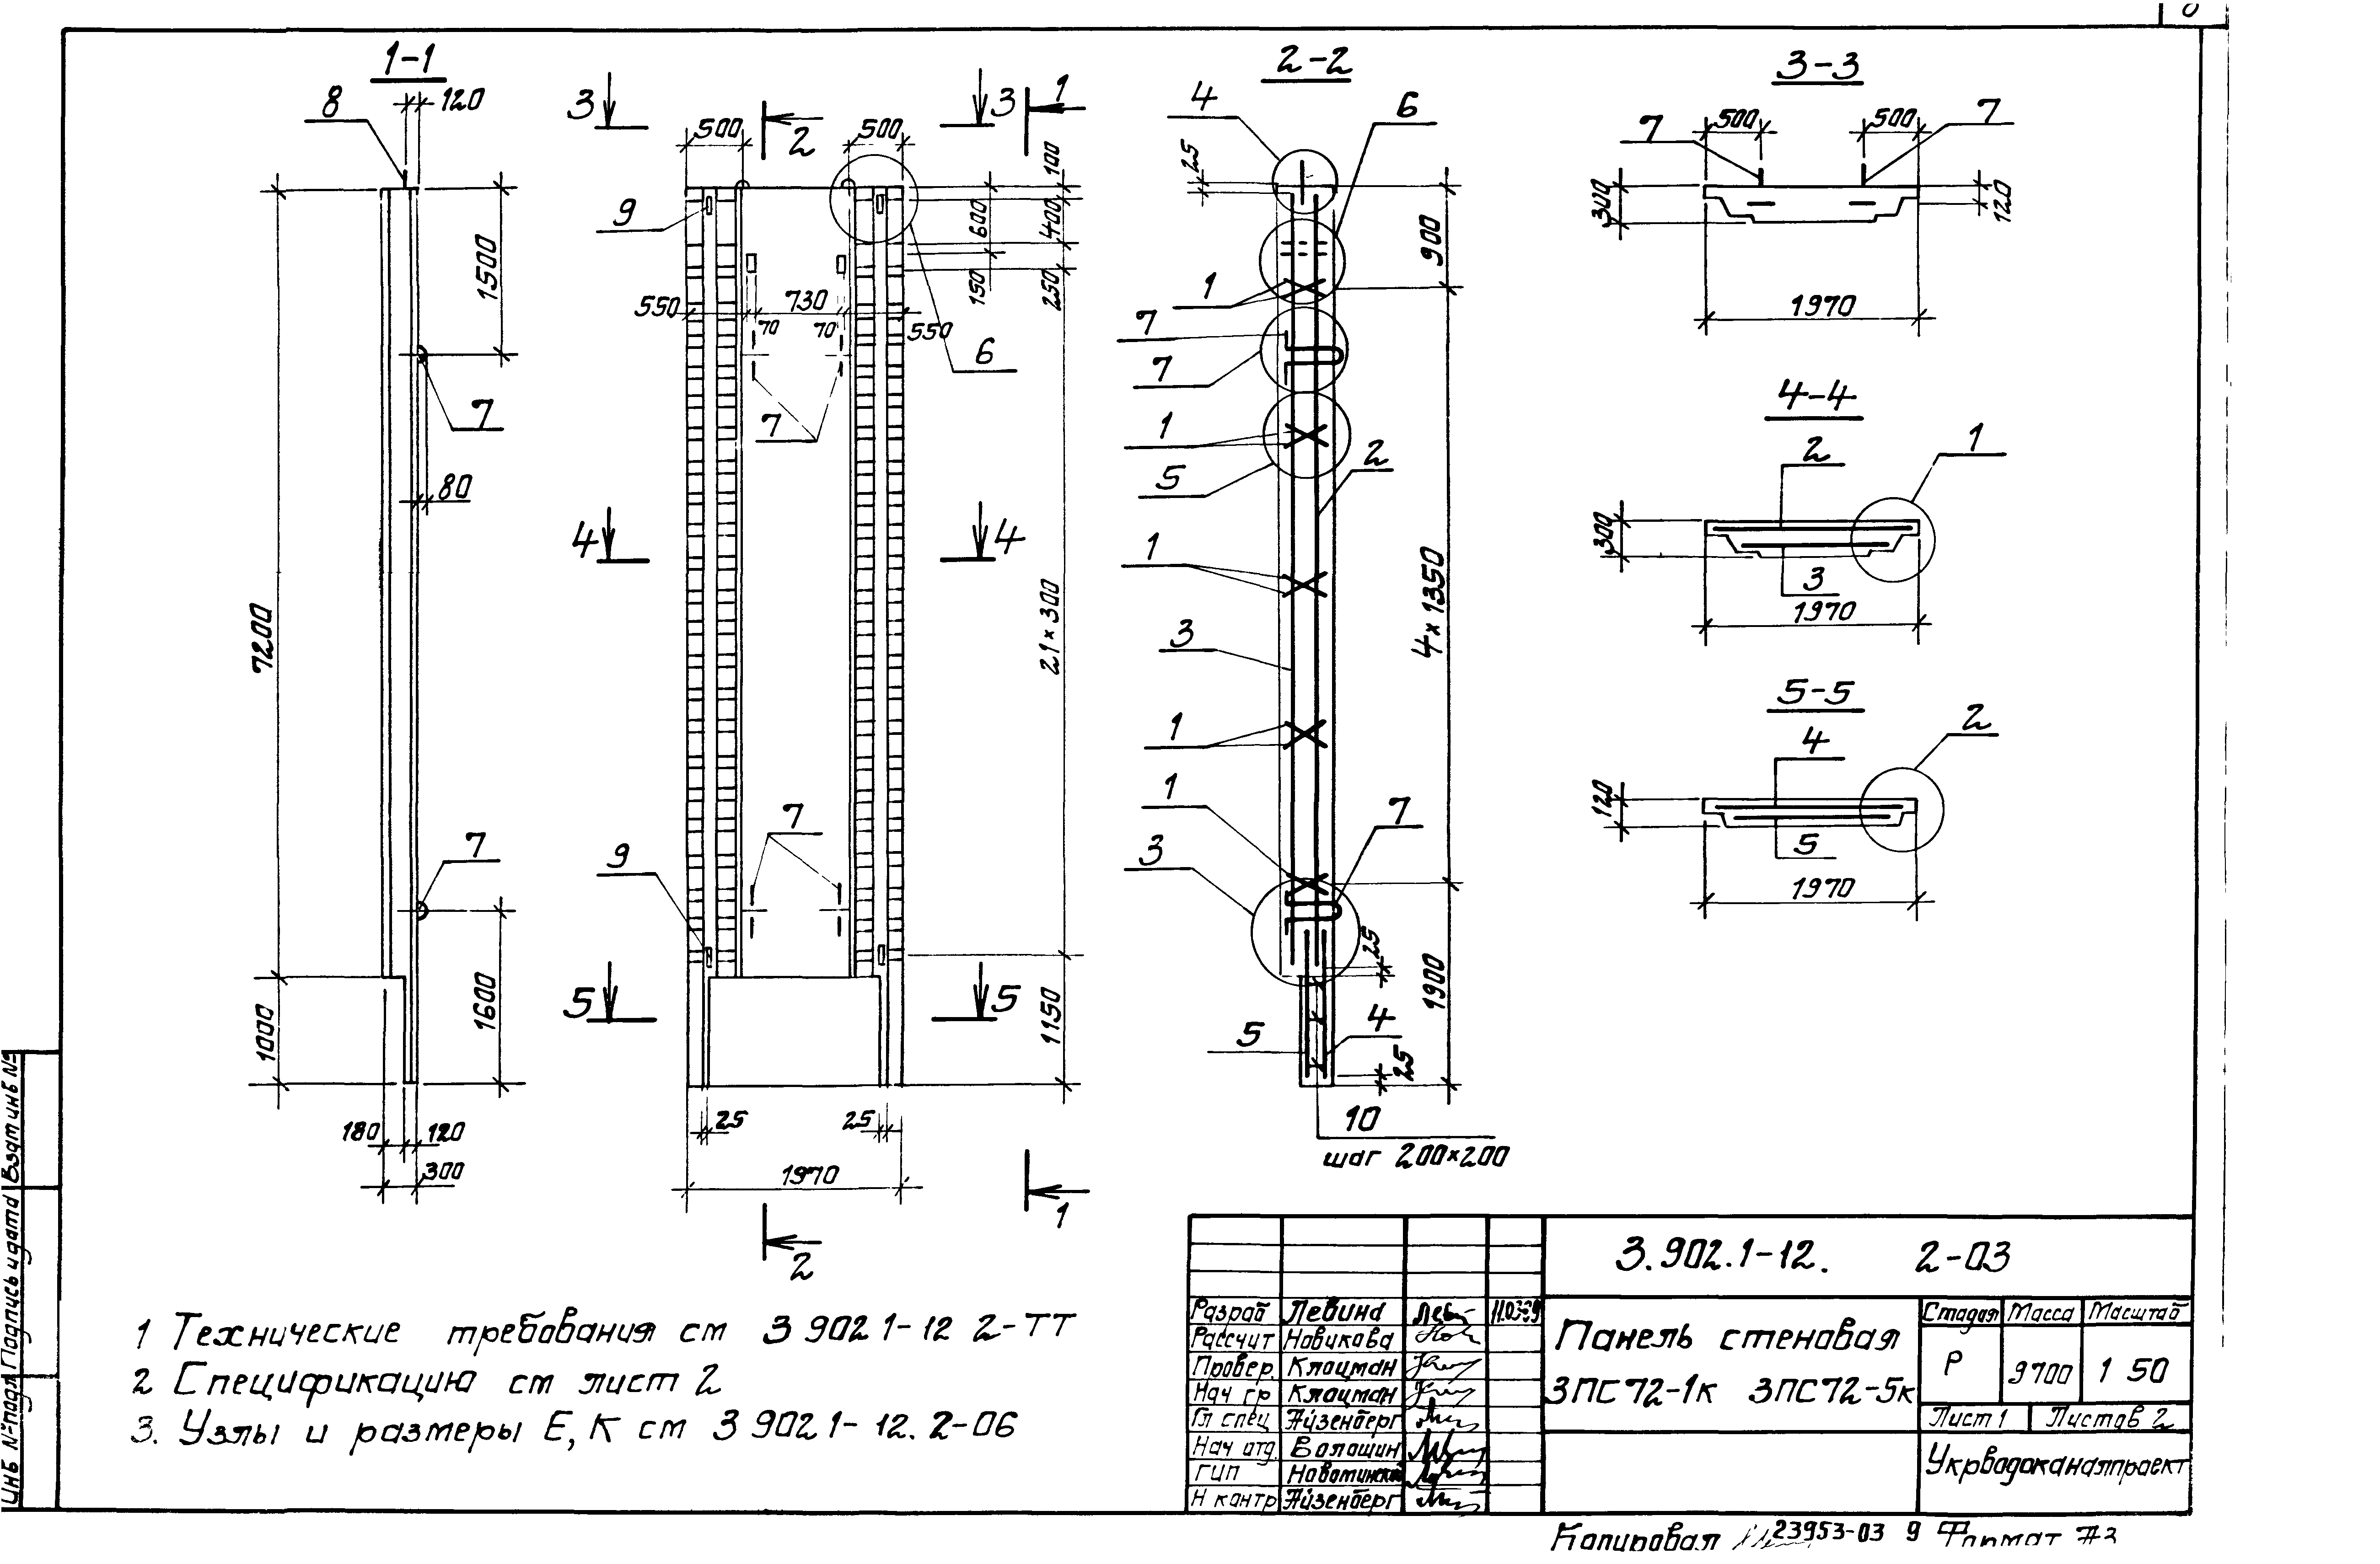 Панель стеновая 3ПС72-2к Серия 3.902.1-12, вып.2